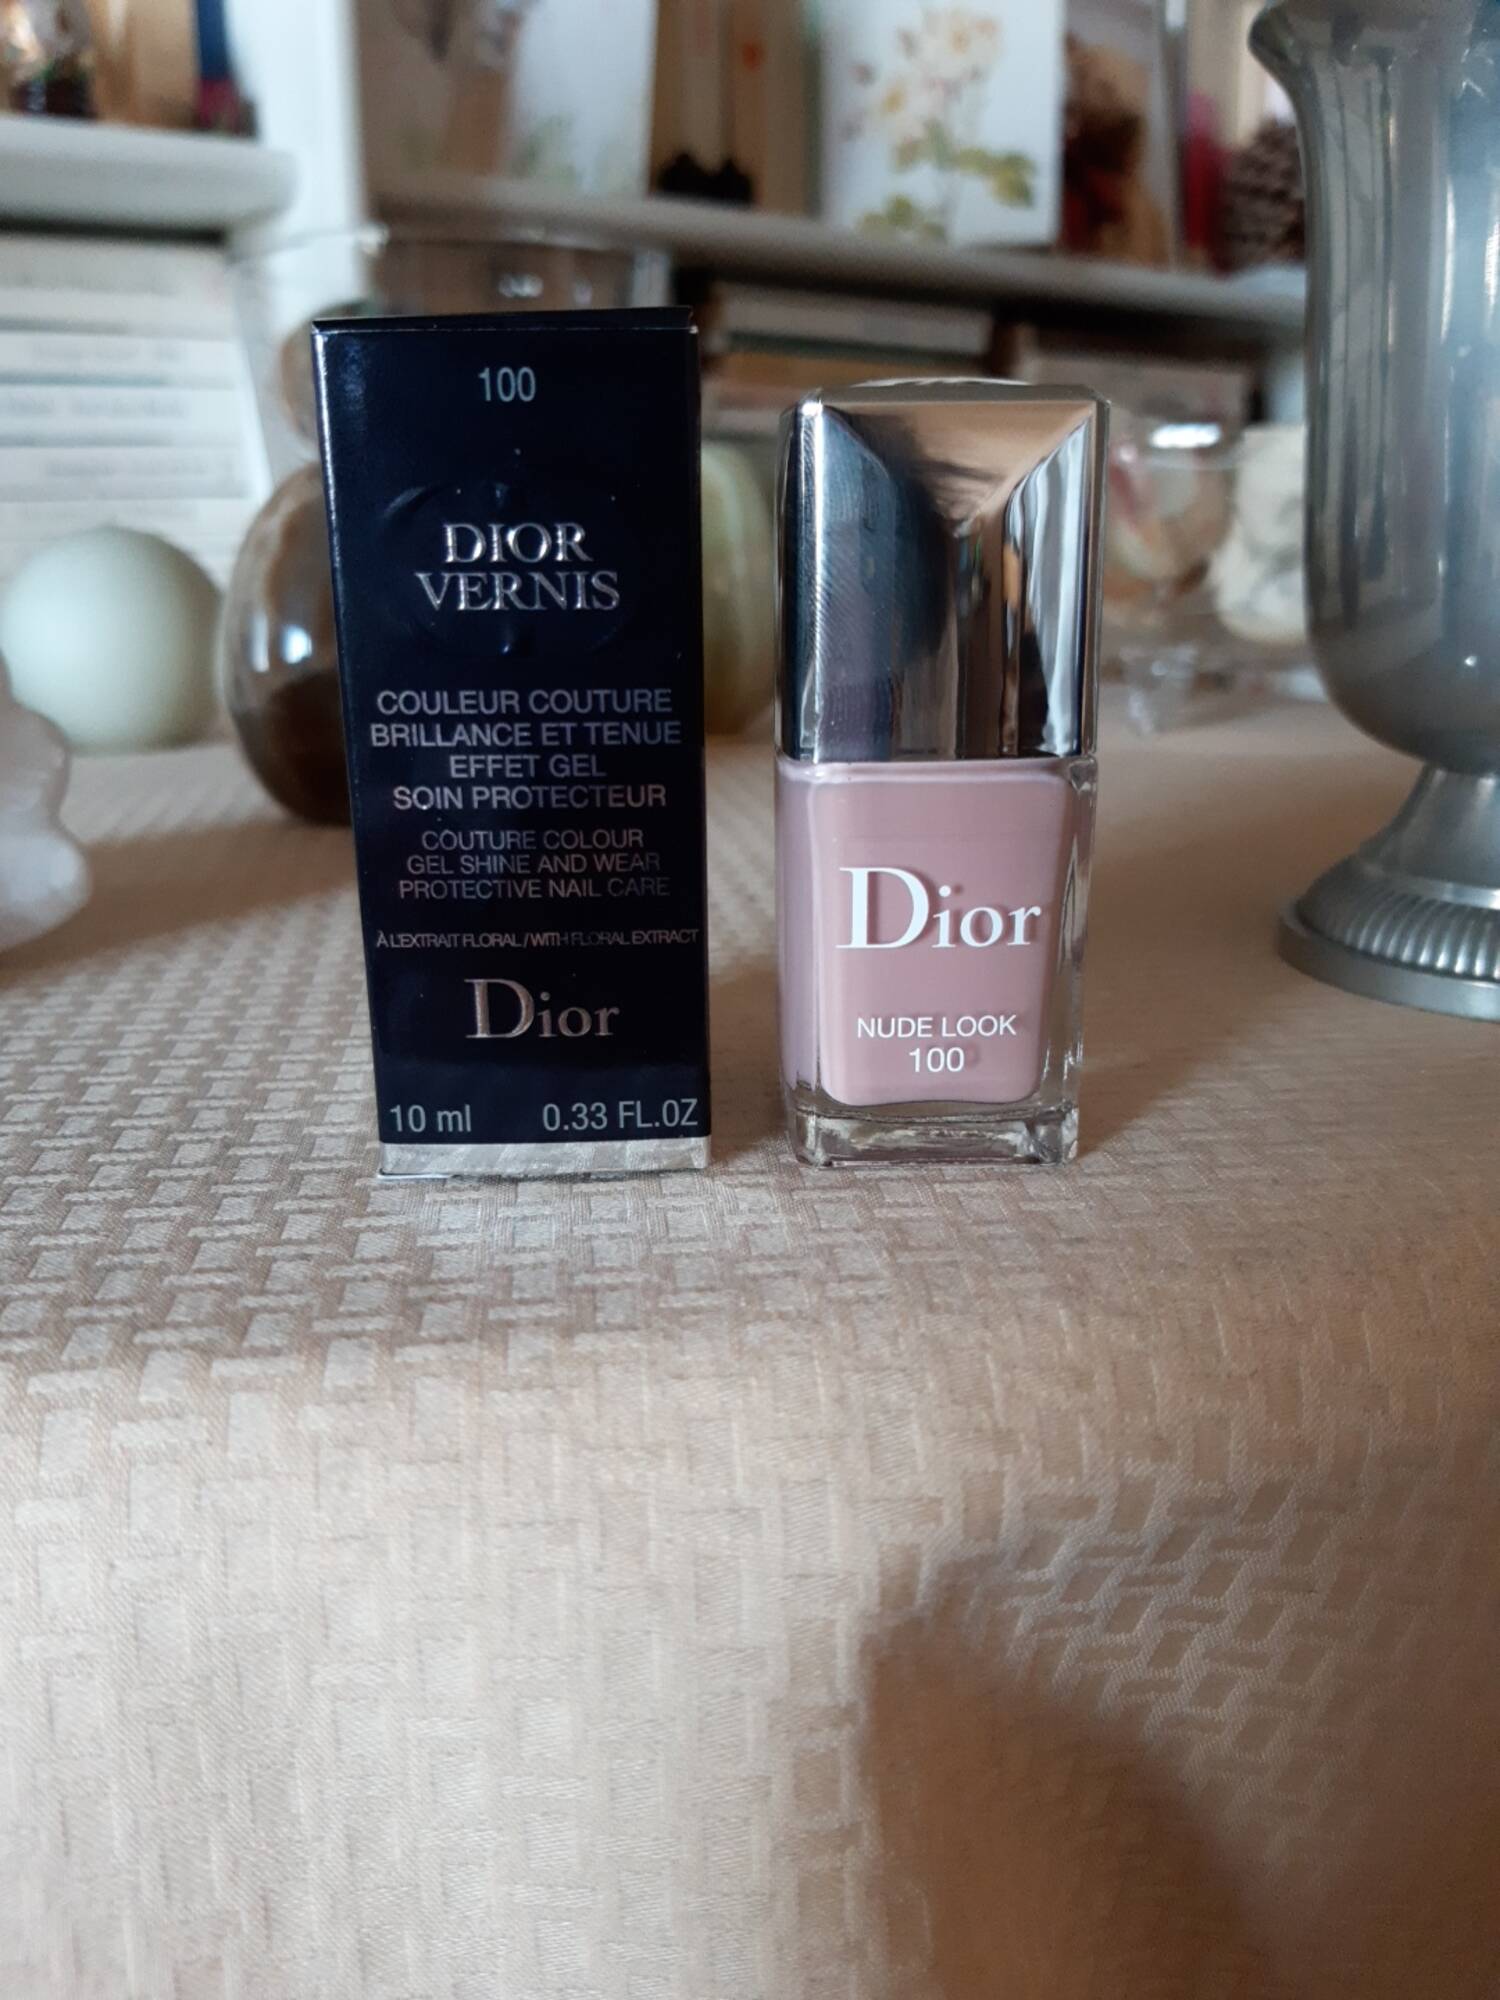 DIOR - Dior vernis 100 Nude look